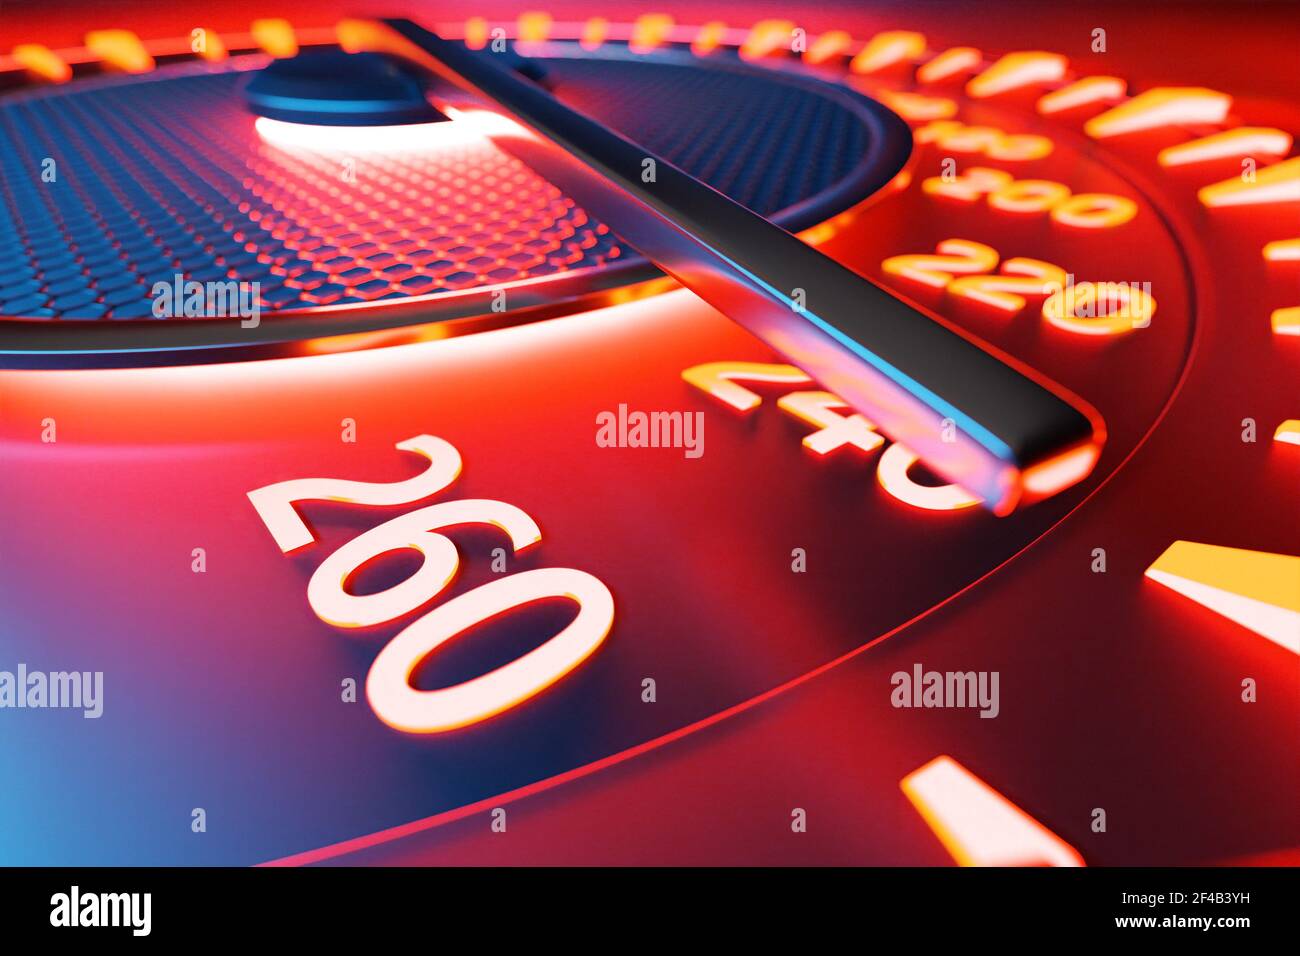 Illustrazione 3D primo piano pannello nero per auto, tachimetro luminoso digitale in stile sportivo sotto la luce rossa al neon. L'ago del tachimetro indica la velocità massima Foto Stock